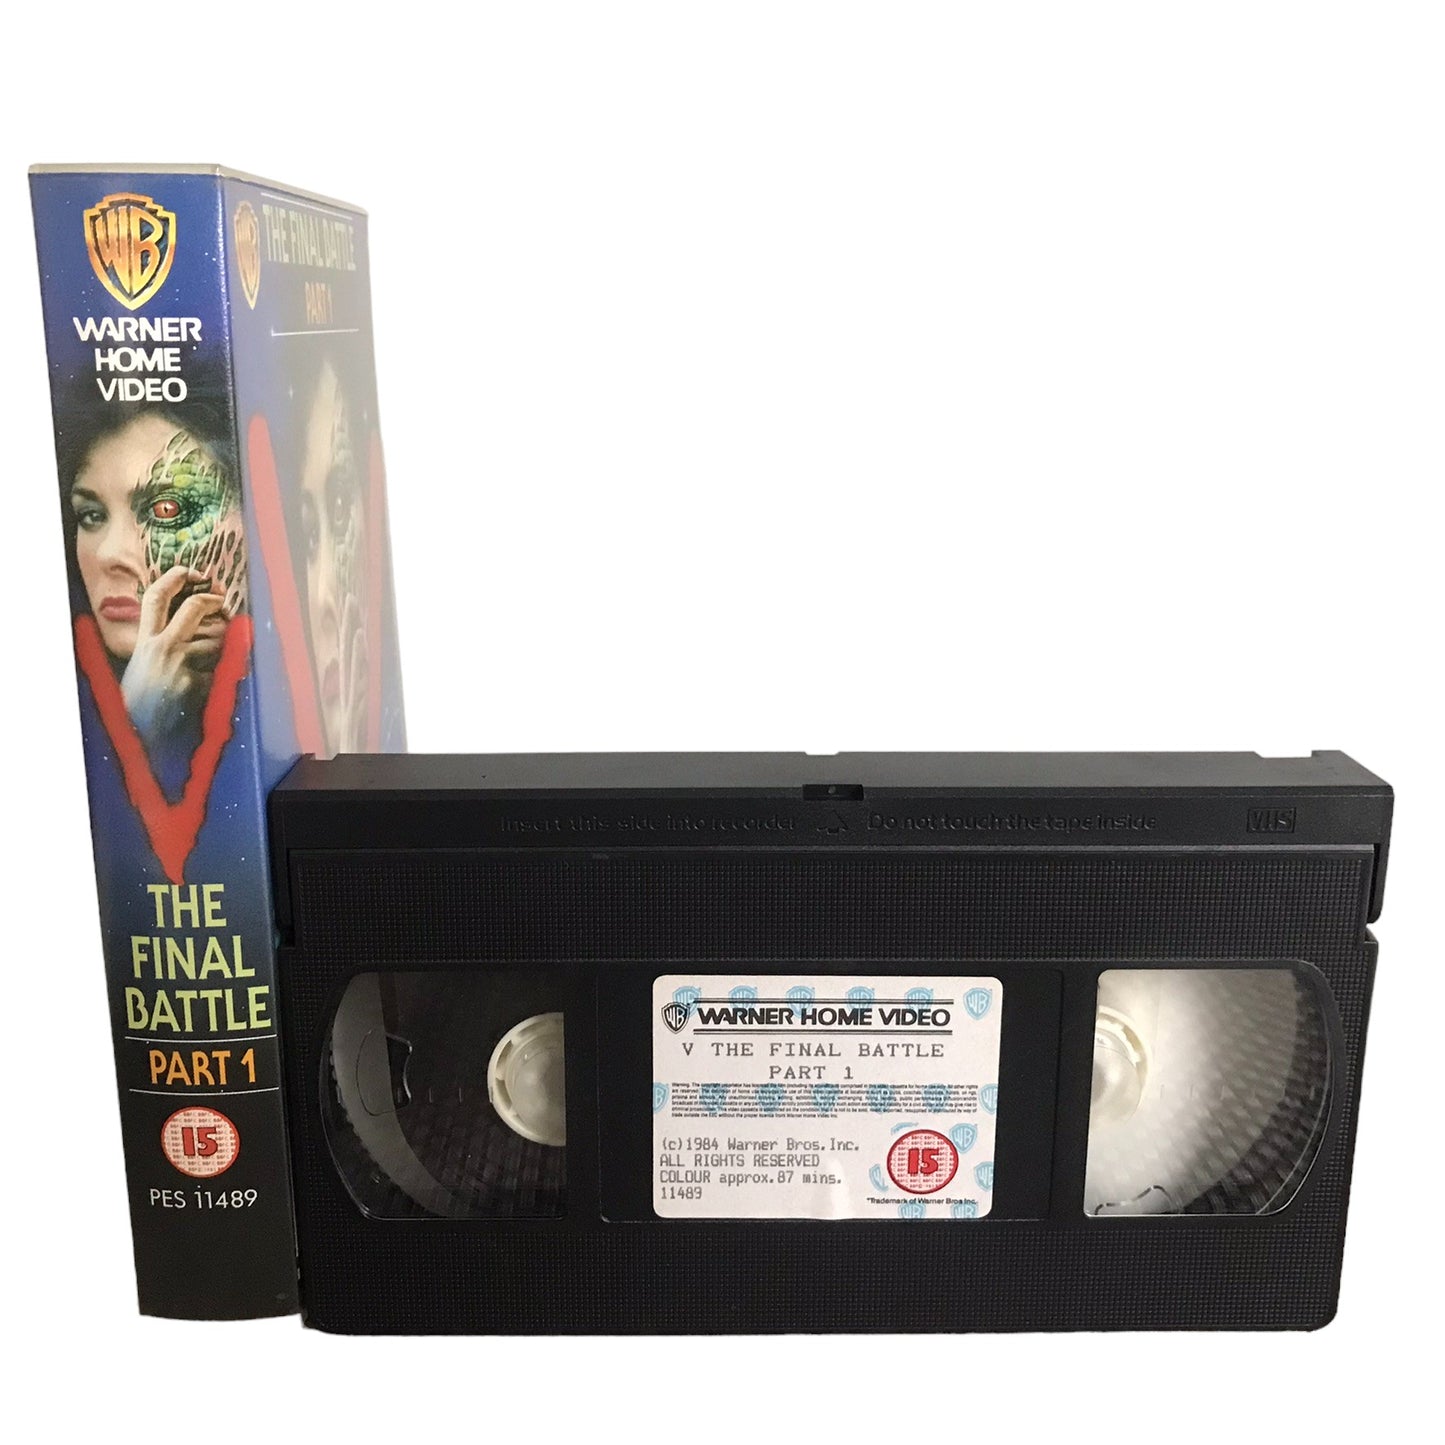 V The Final Battle - Part 1 - Jane Badler - Warner Home Video - Sci-Fi - Pal - VHS-